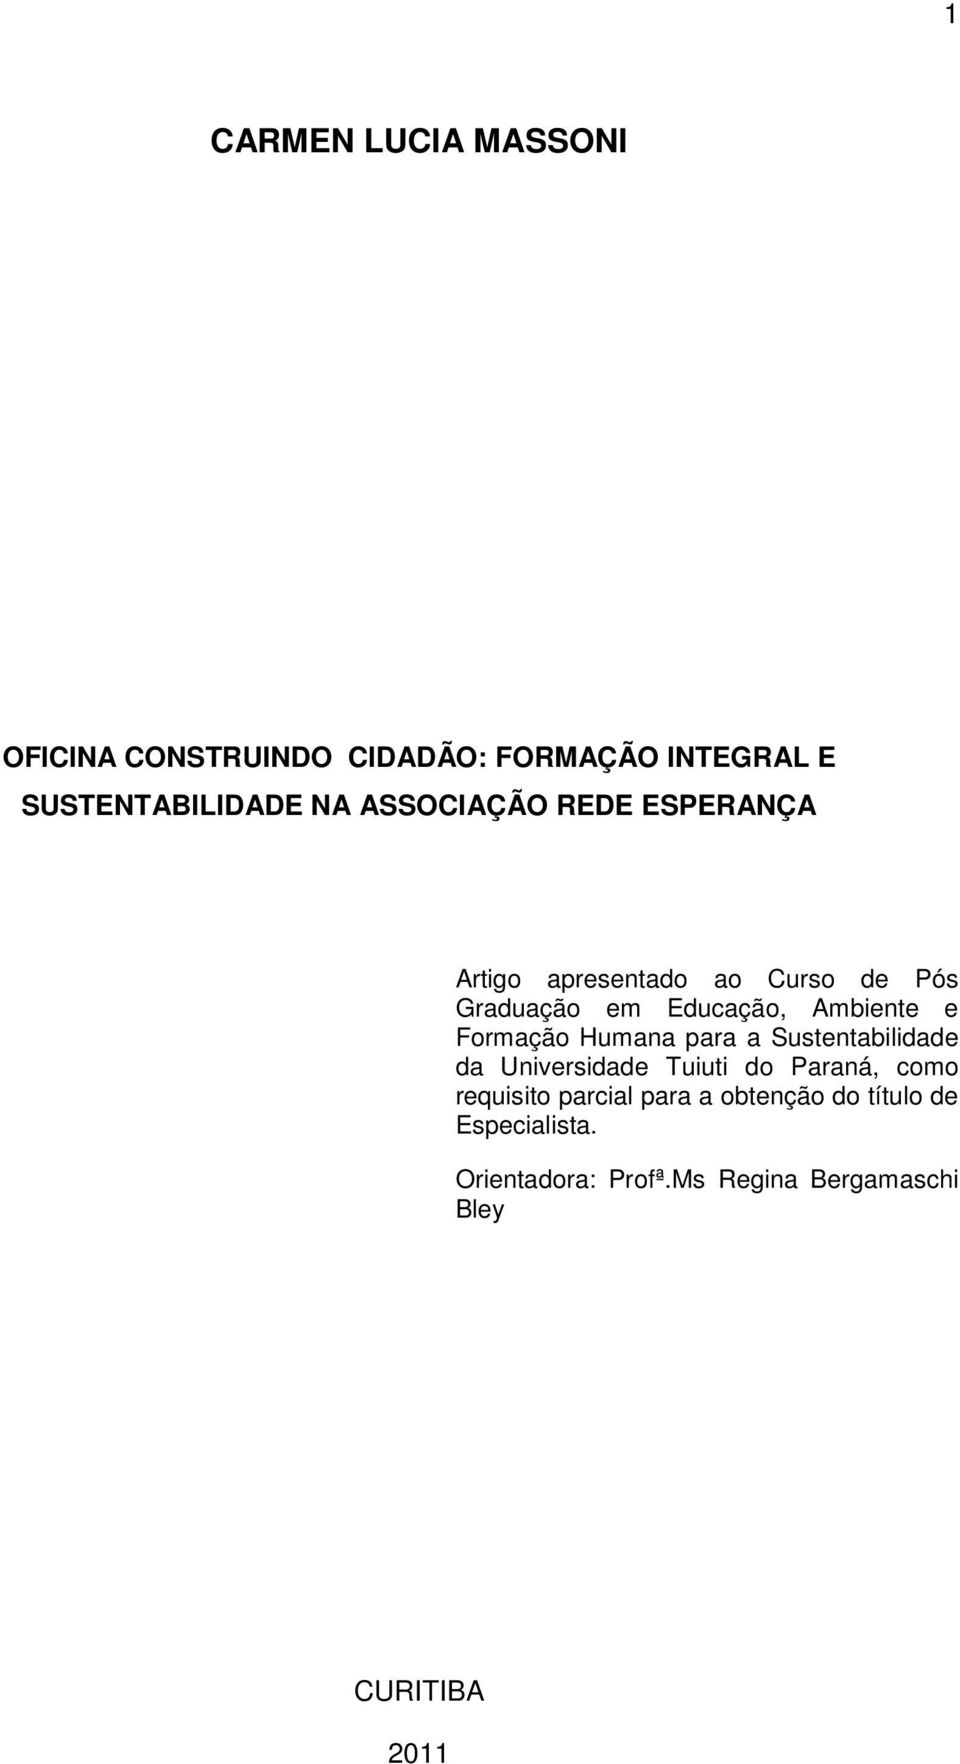 Formação Humana para a Sustentabilidade da Universidade Tuiuti do Paraná, como requisito parcial